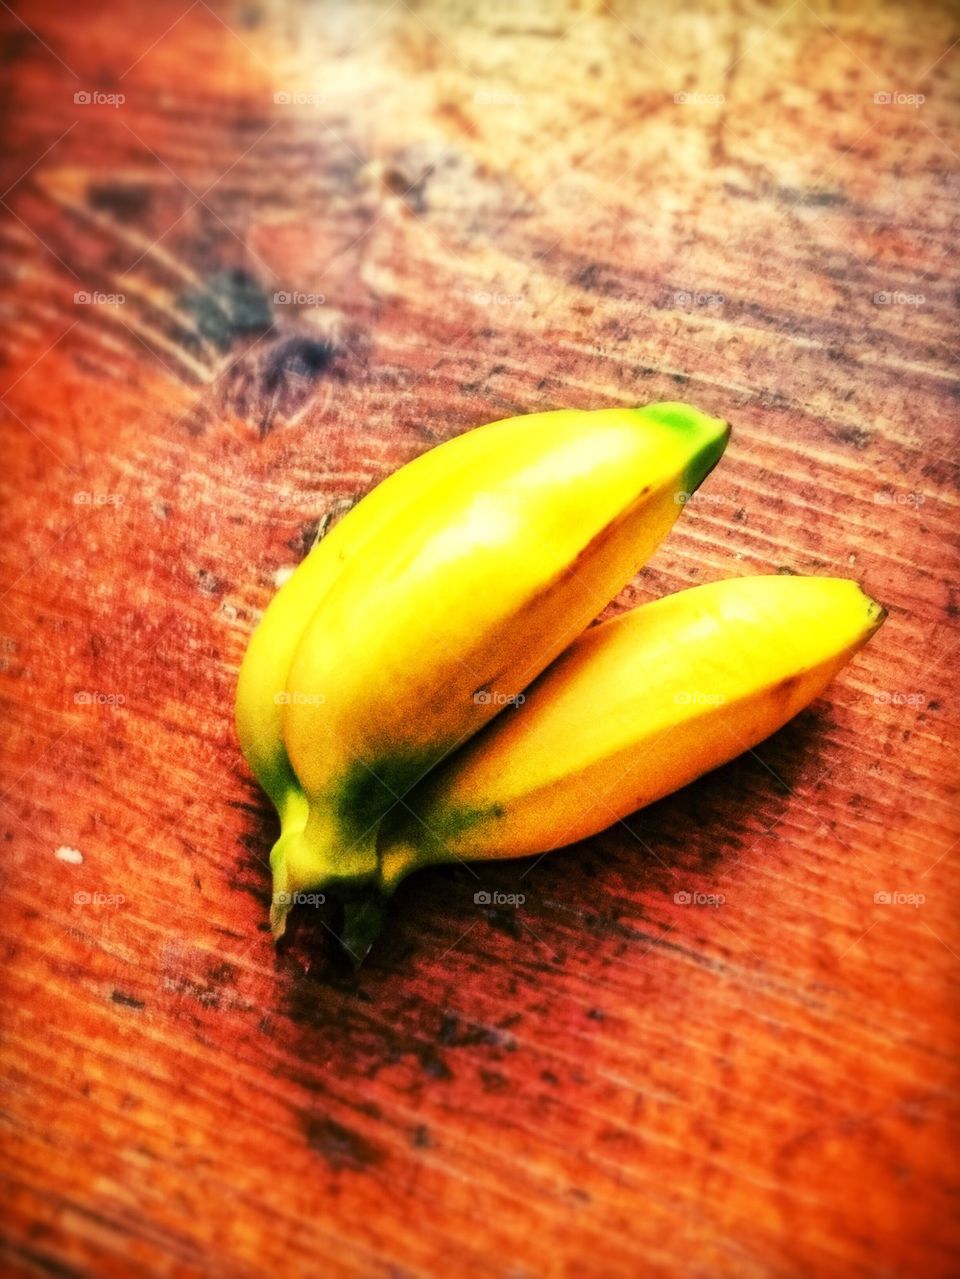 Small bananas